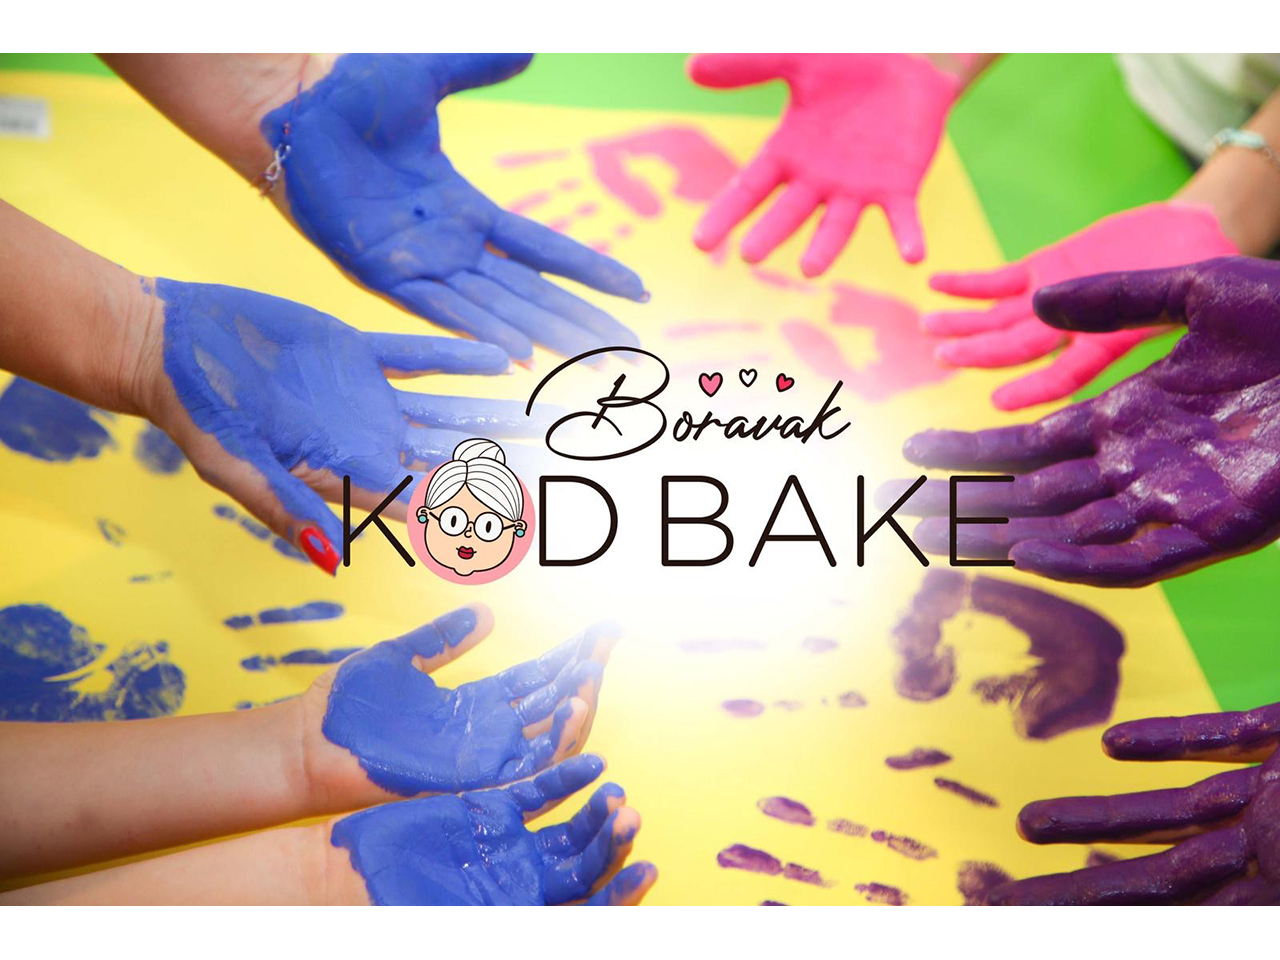 Photo 4 - KOD BAKE EXTENDED STAY Extended daycare for children Belgrade